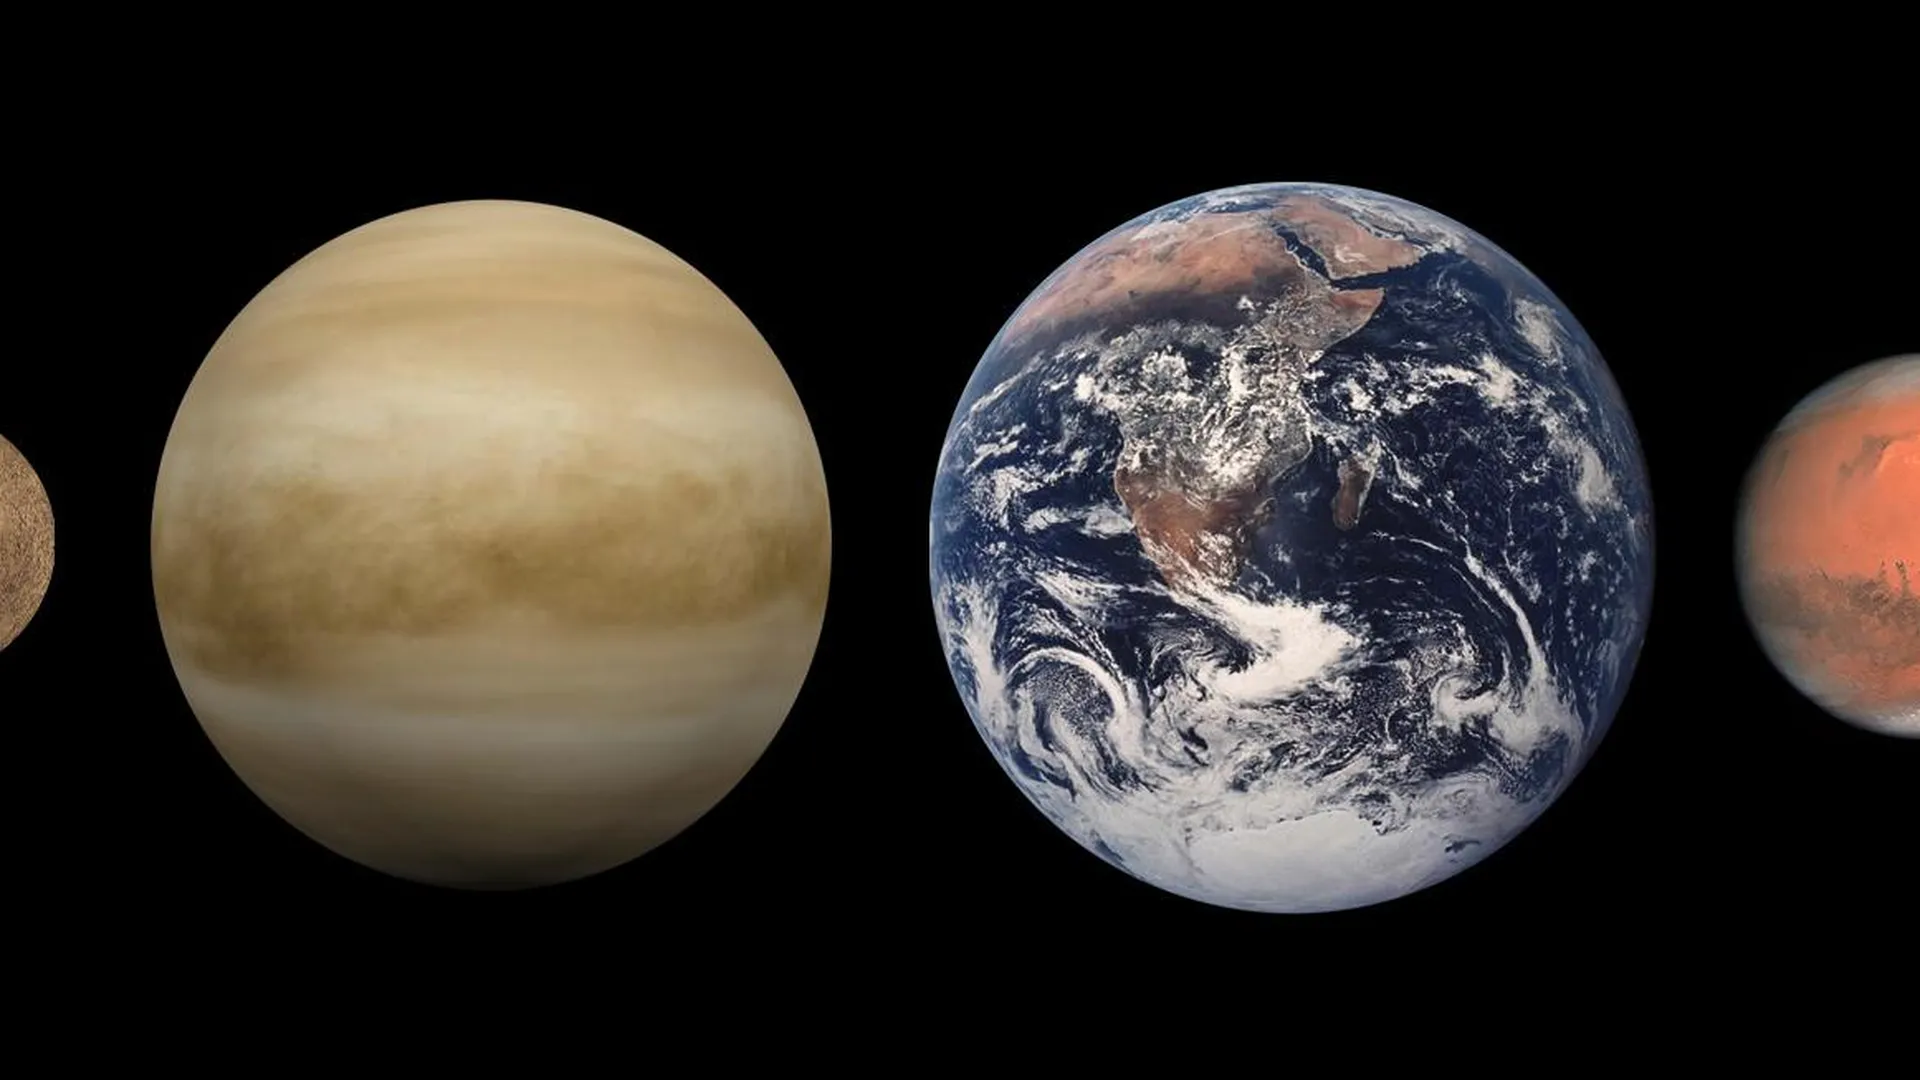 Сравнительные размеры планет земной группы (слева направо: Меркурий, Венера, Земля, Марс).